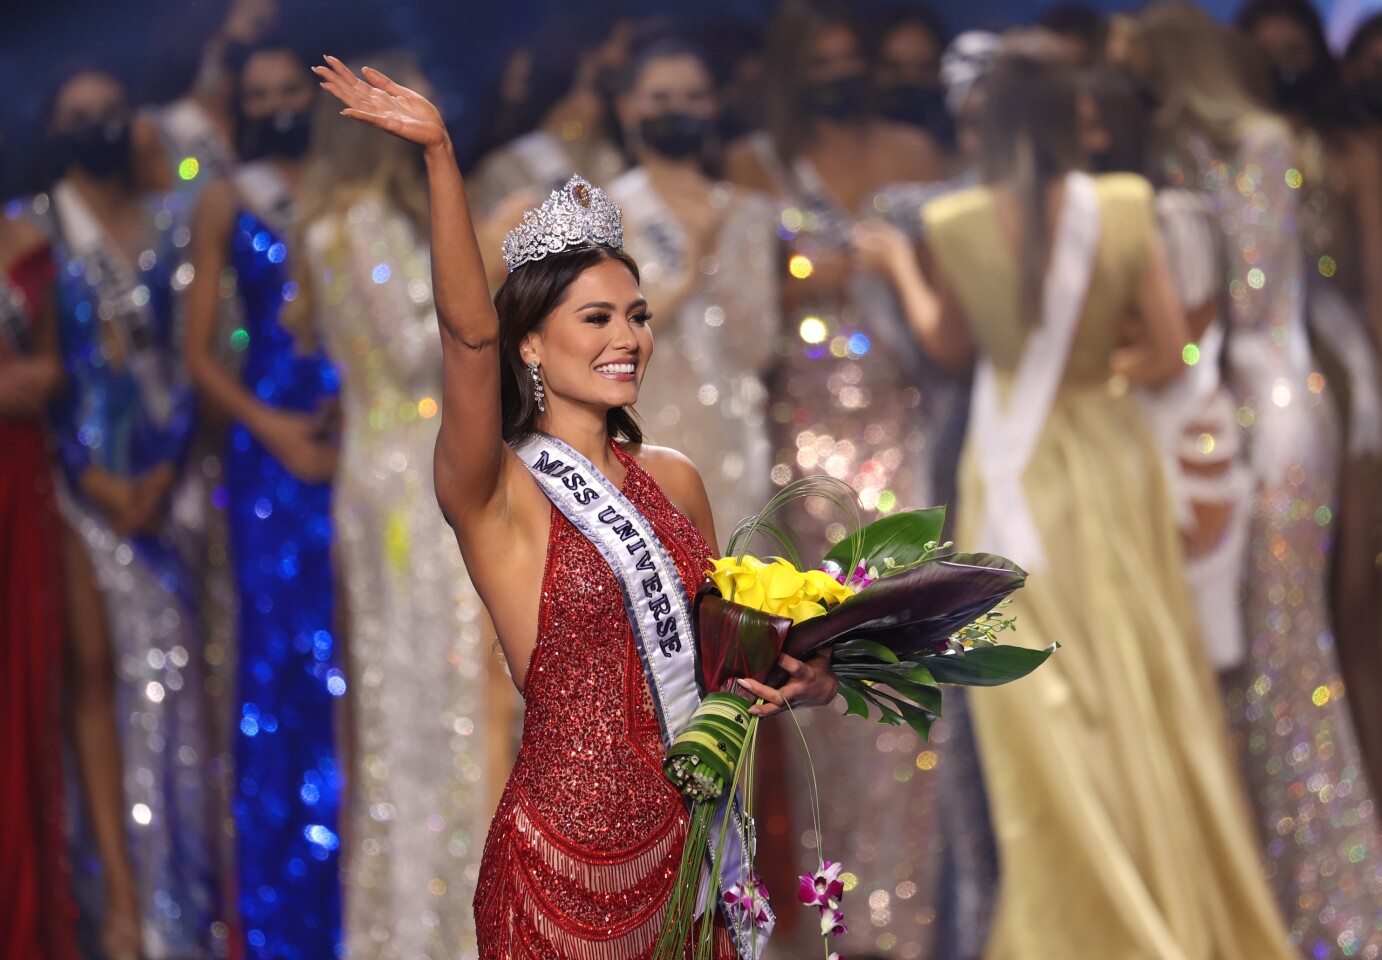 México gana un Miss Universo con toque feminista, político y latino - Los  Angeles Times